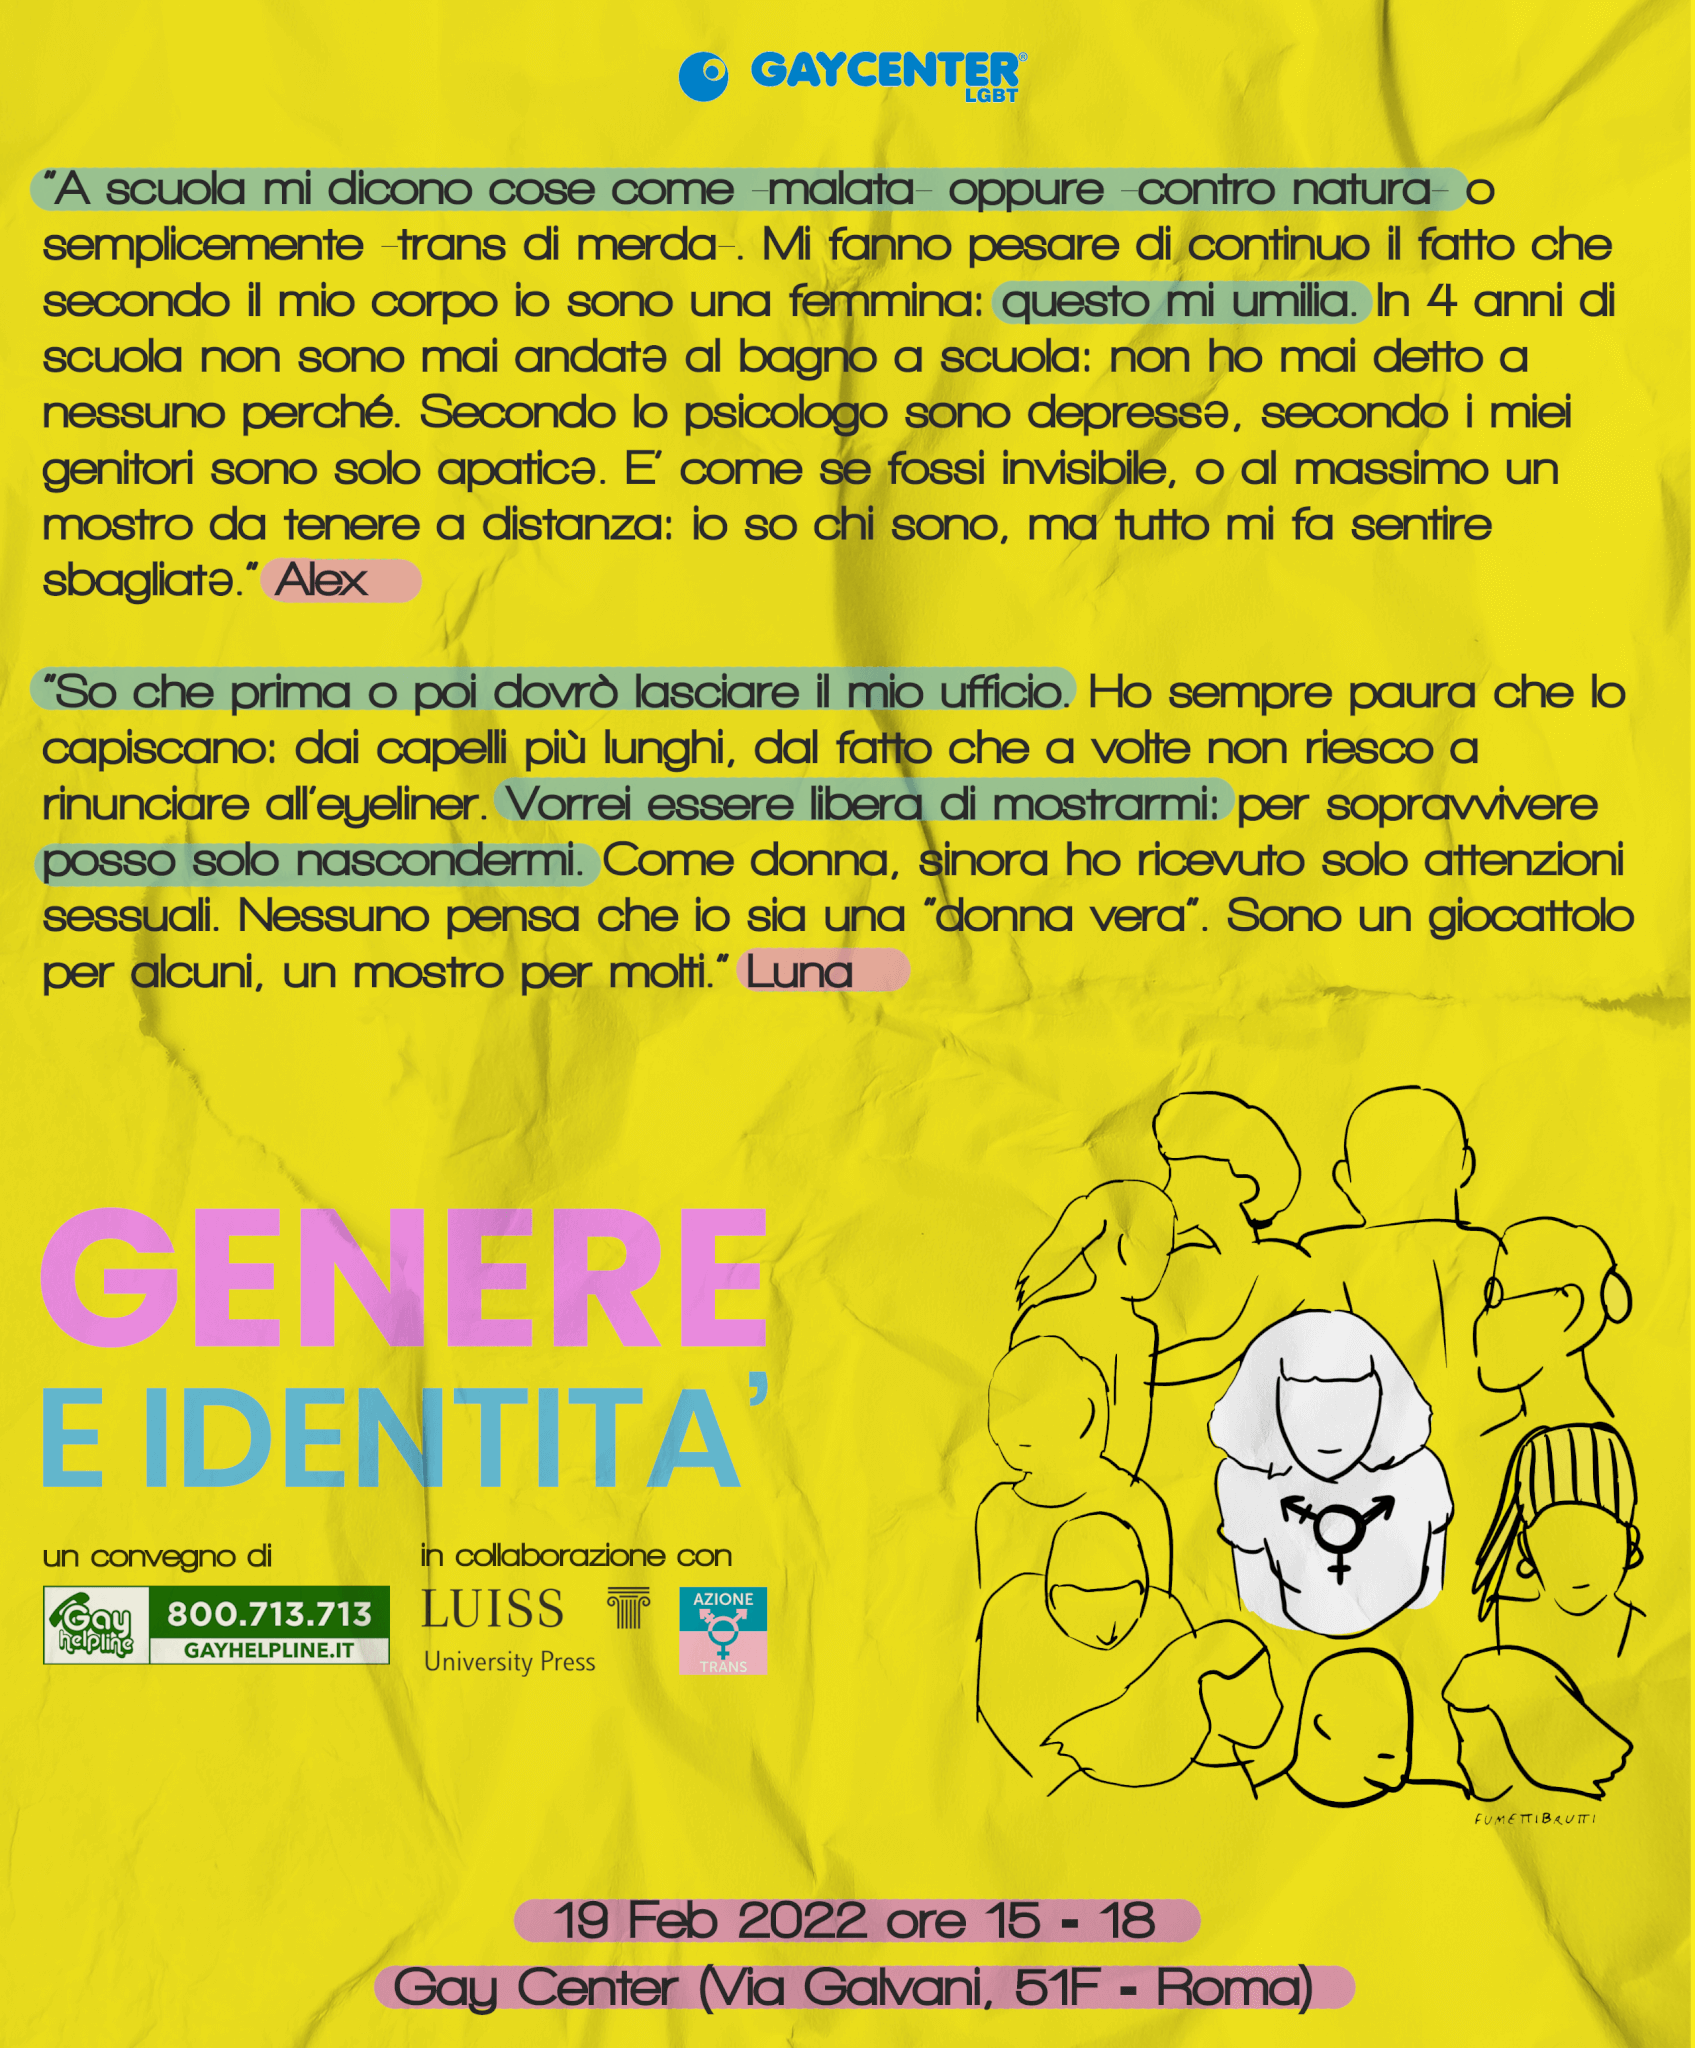 enere e identità convegno roma turano gay center_gayit